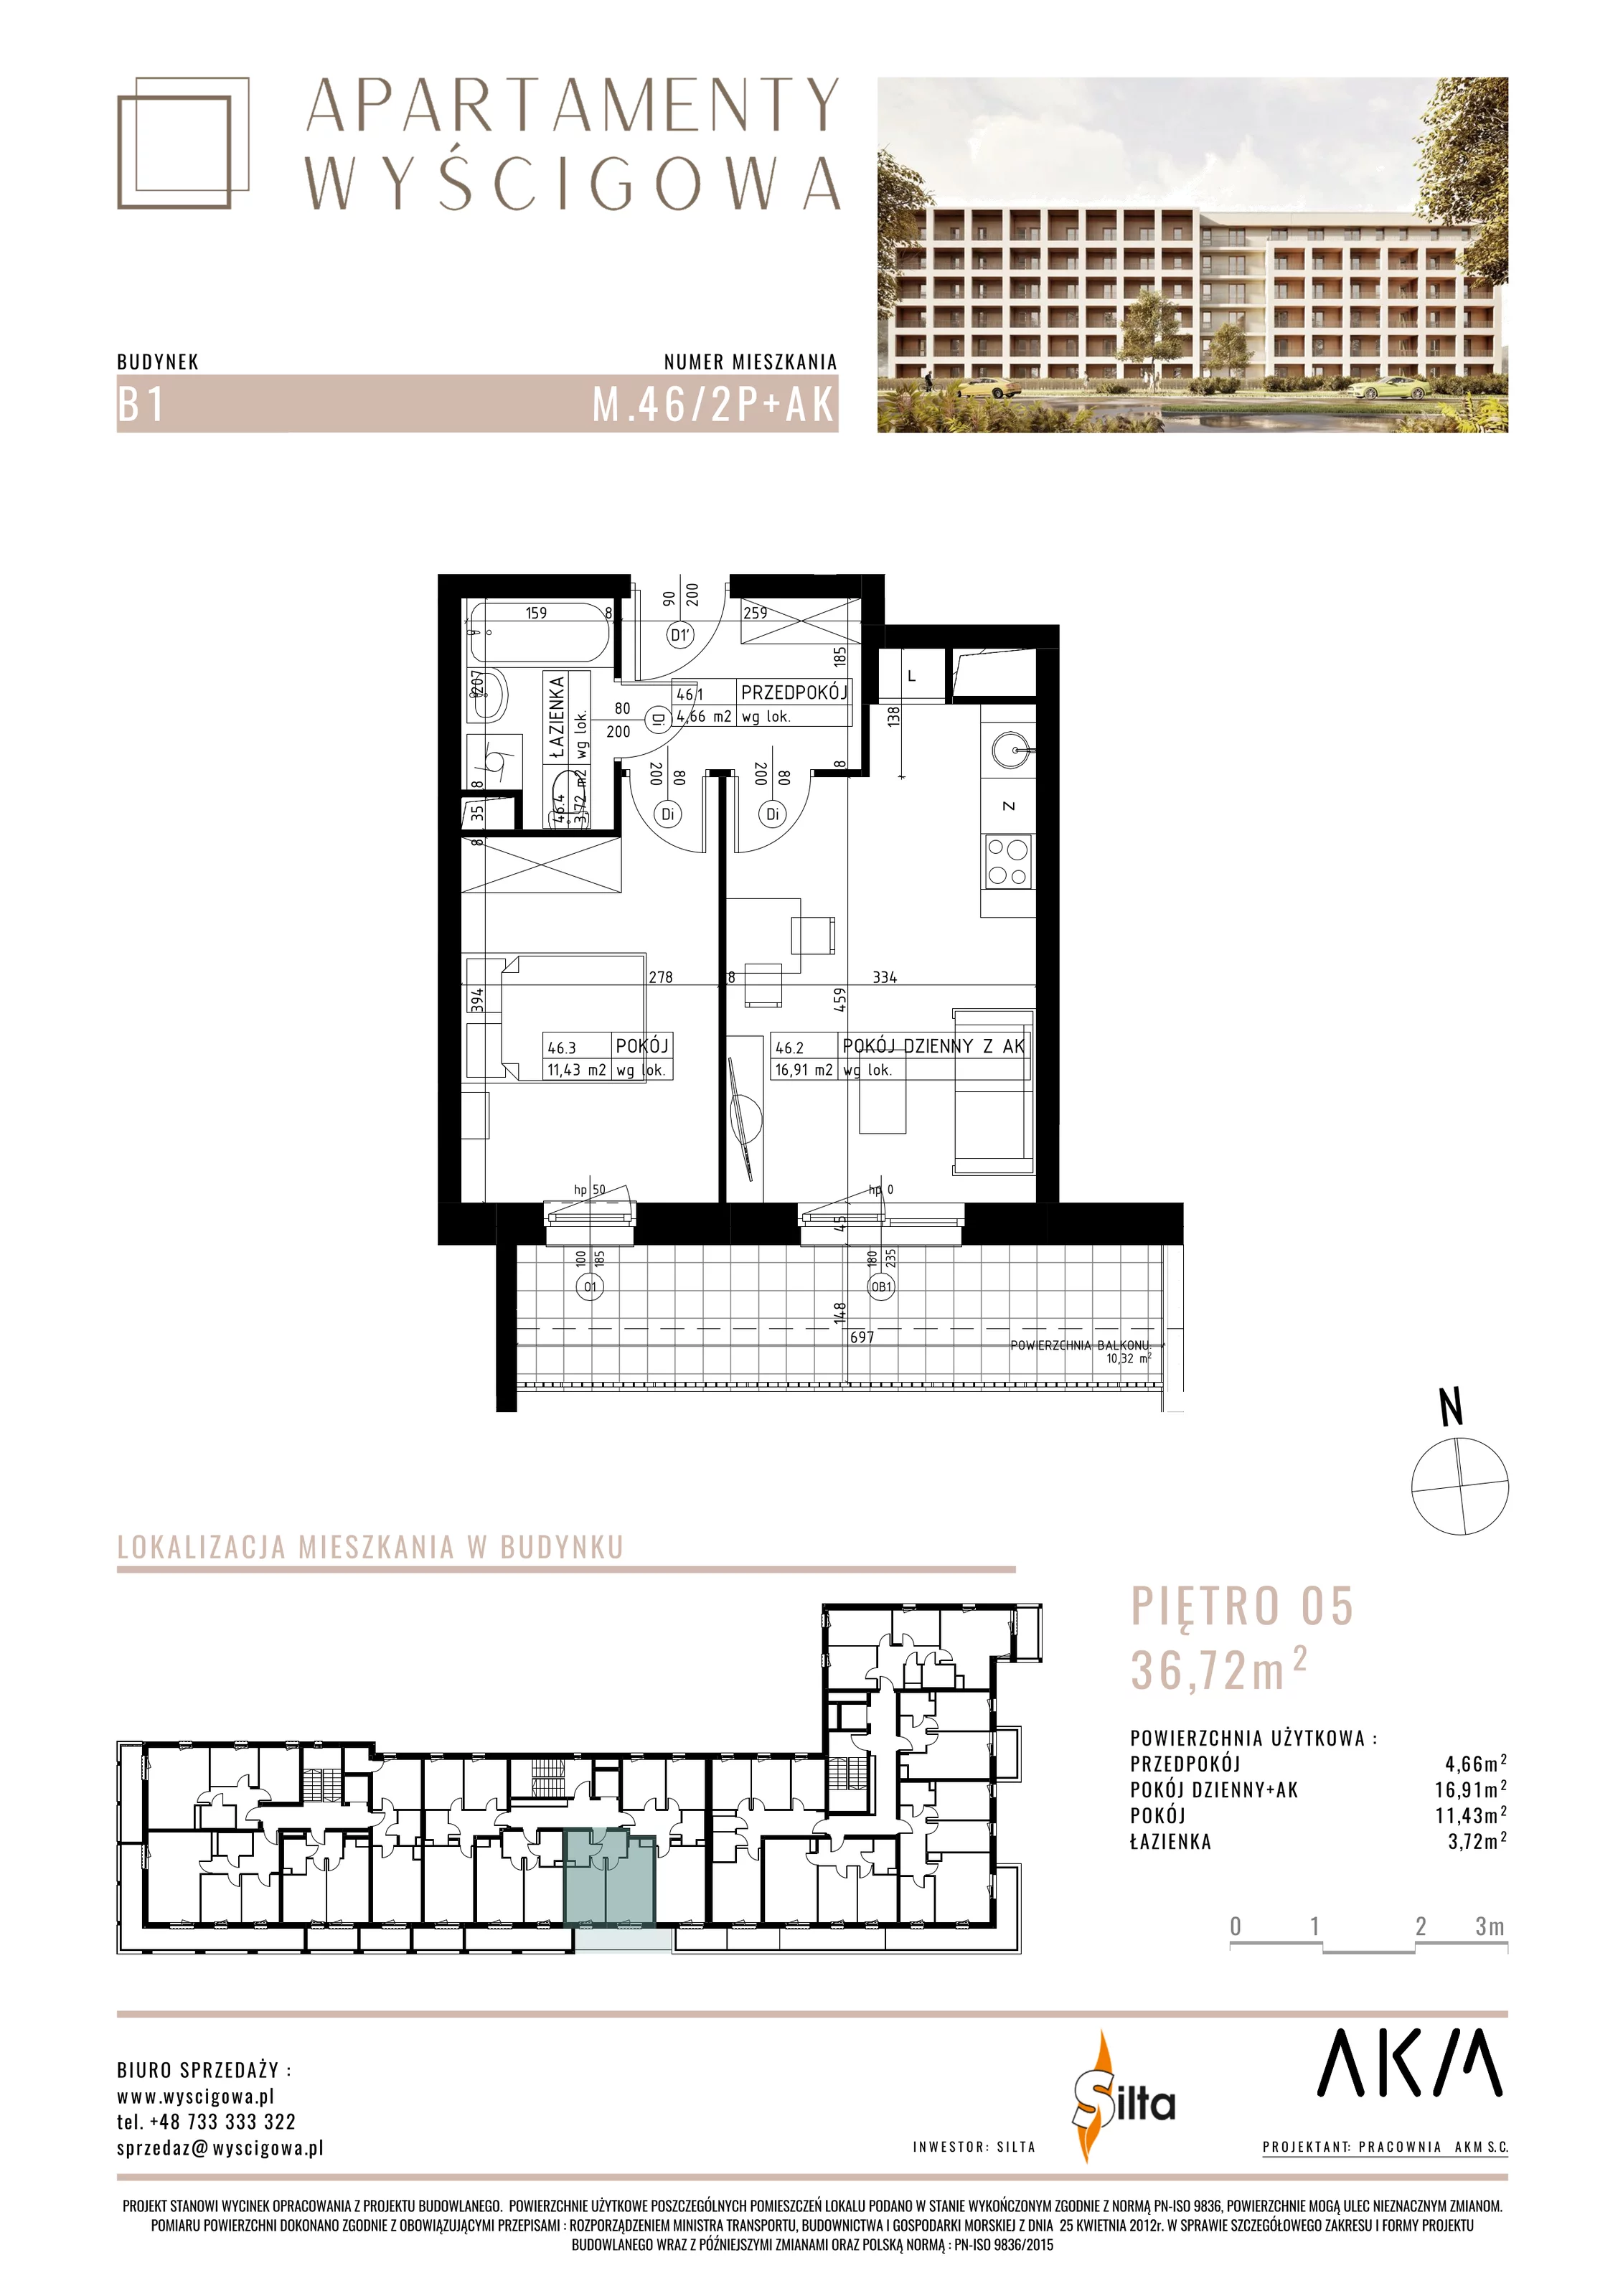 Mieszkanie 36,72 m², piętro 5, oferta nr B1.M46, Apartamenty Wyścigowa, Lublin, Dziesiąta, Dziesiąta, ul. Wyścigowa